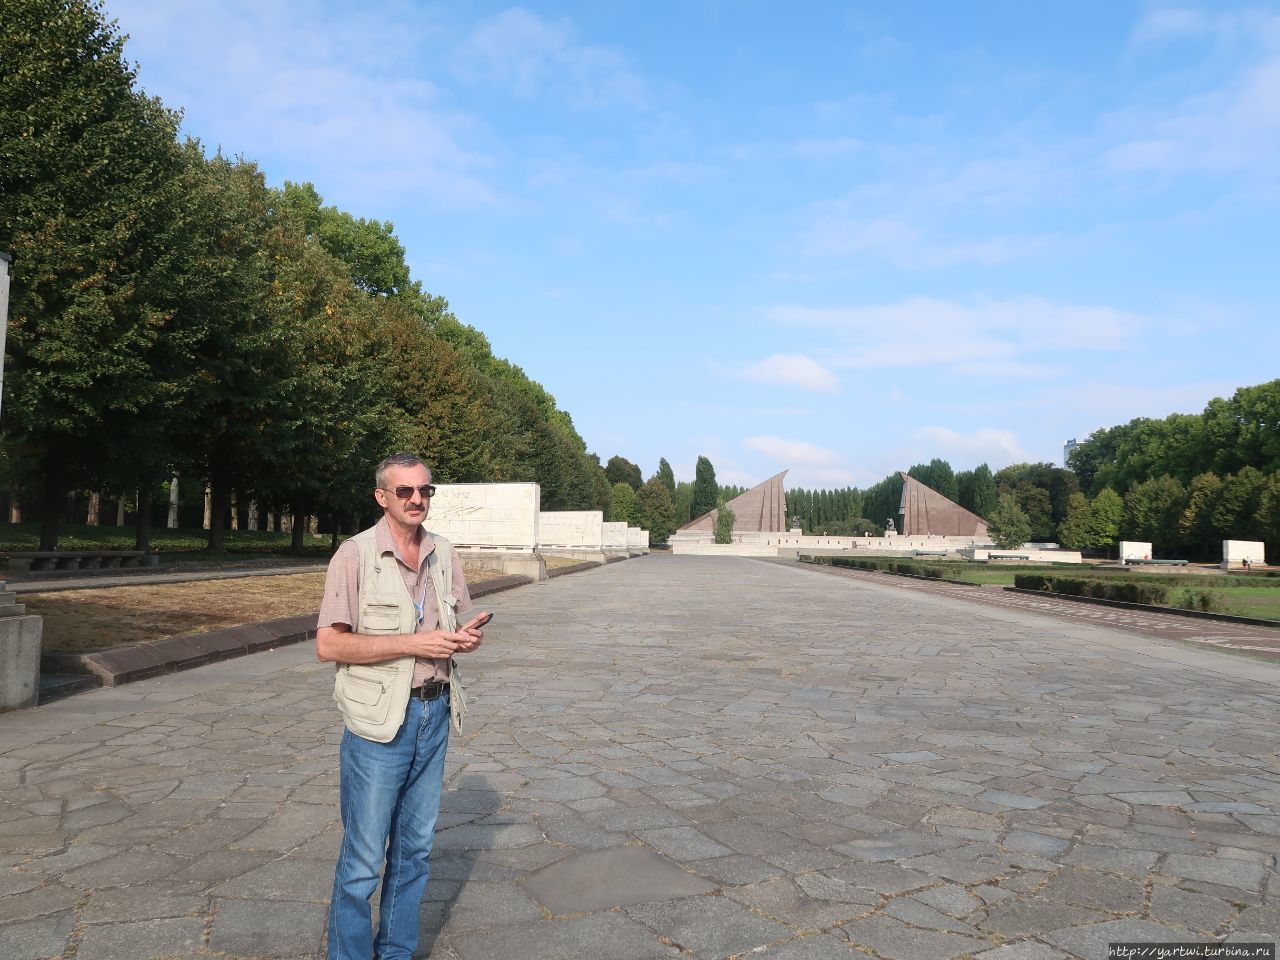 Перемещаемся по парку достаточно интенсивно, подходим к известному памятнику — фигуре советского солдата, рассекающего мечом свастику, и со спасённым ребёнком на руке. Делаем фотографии на память. Берлин, Германия